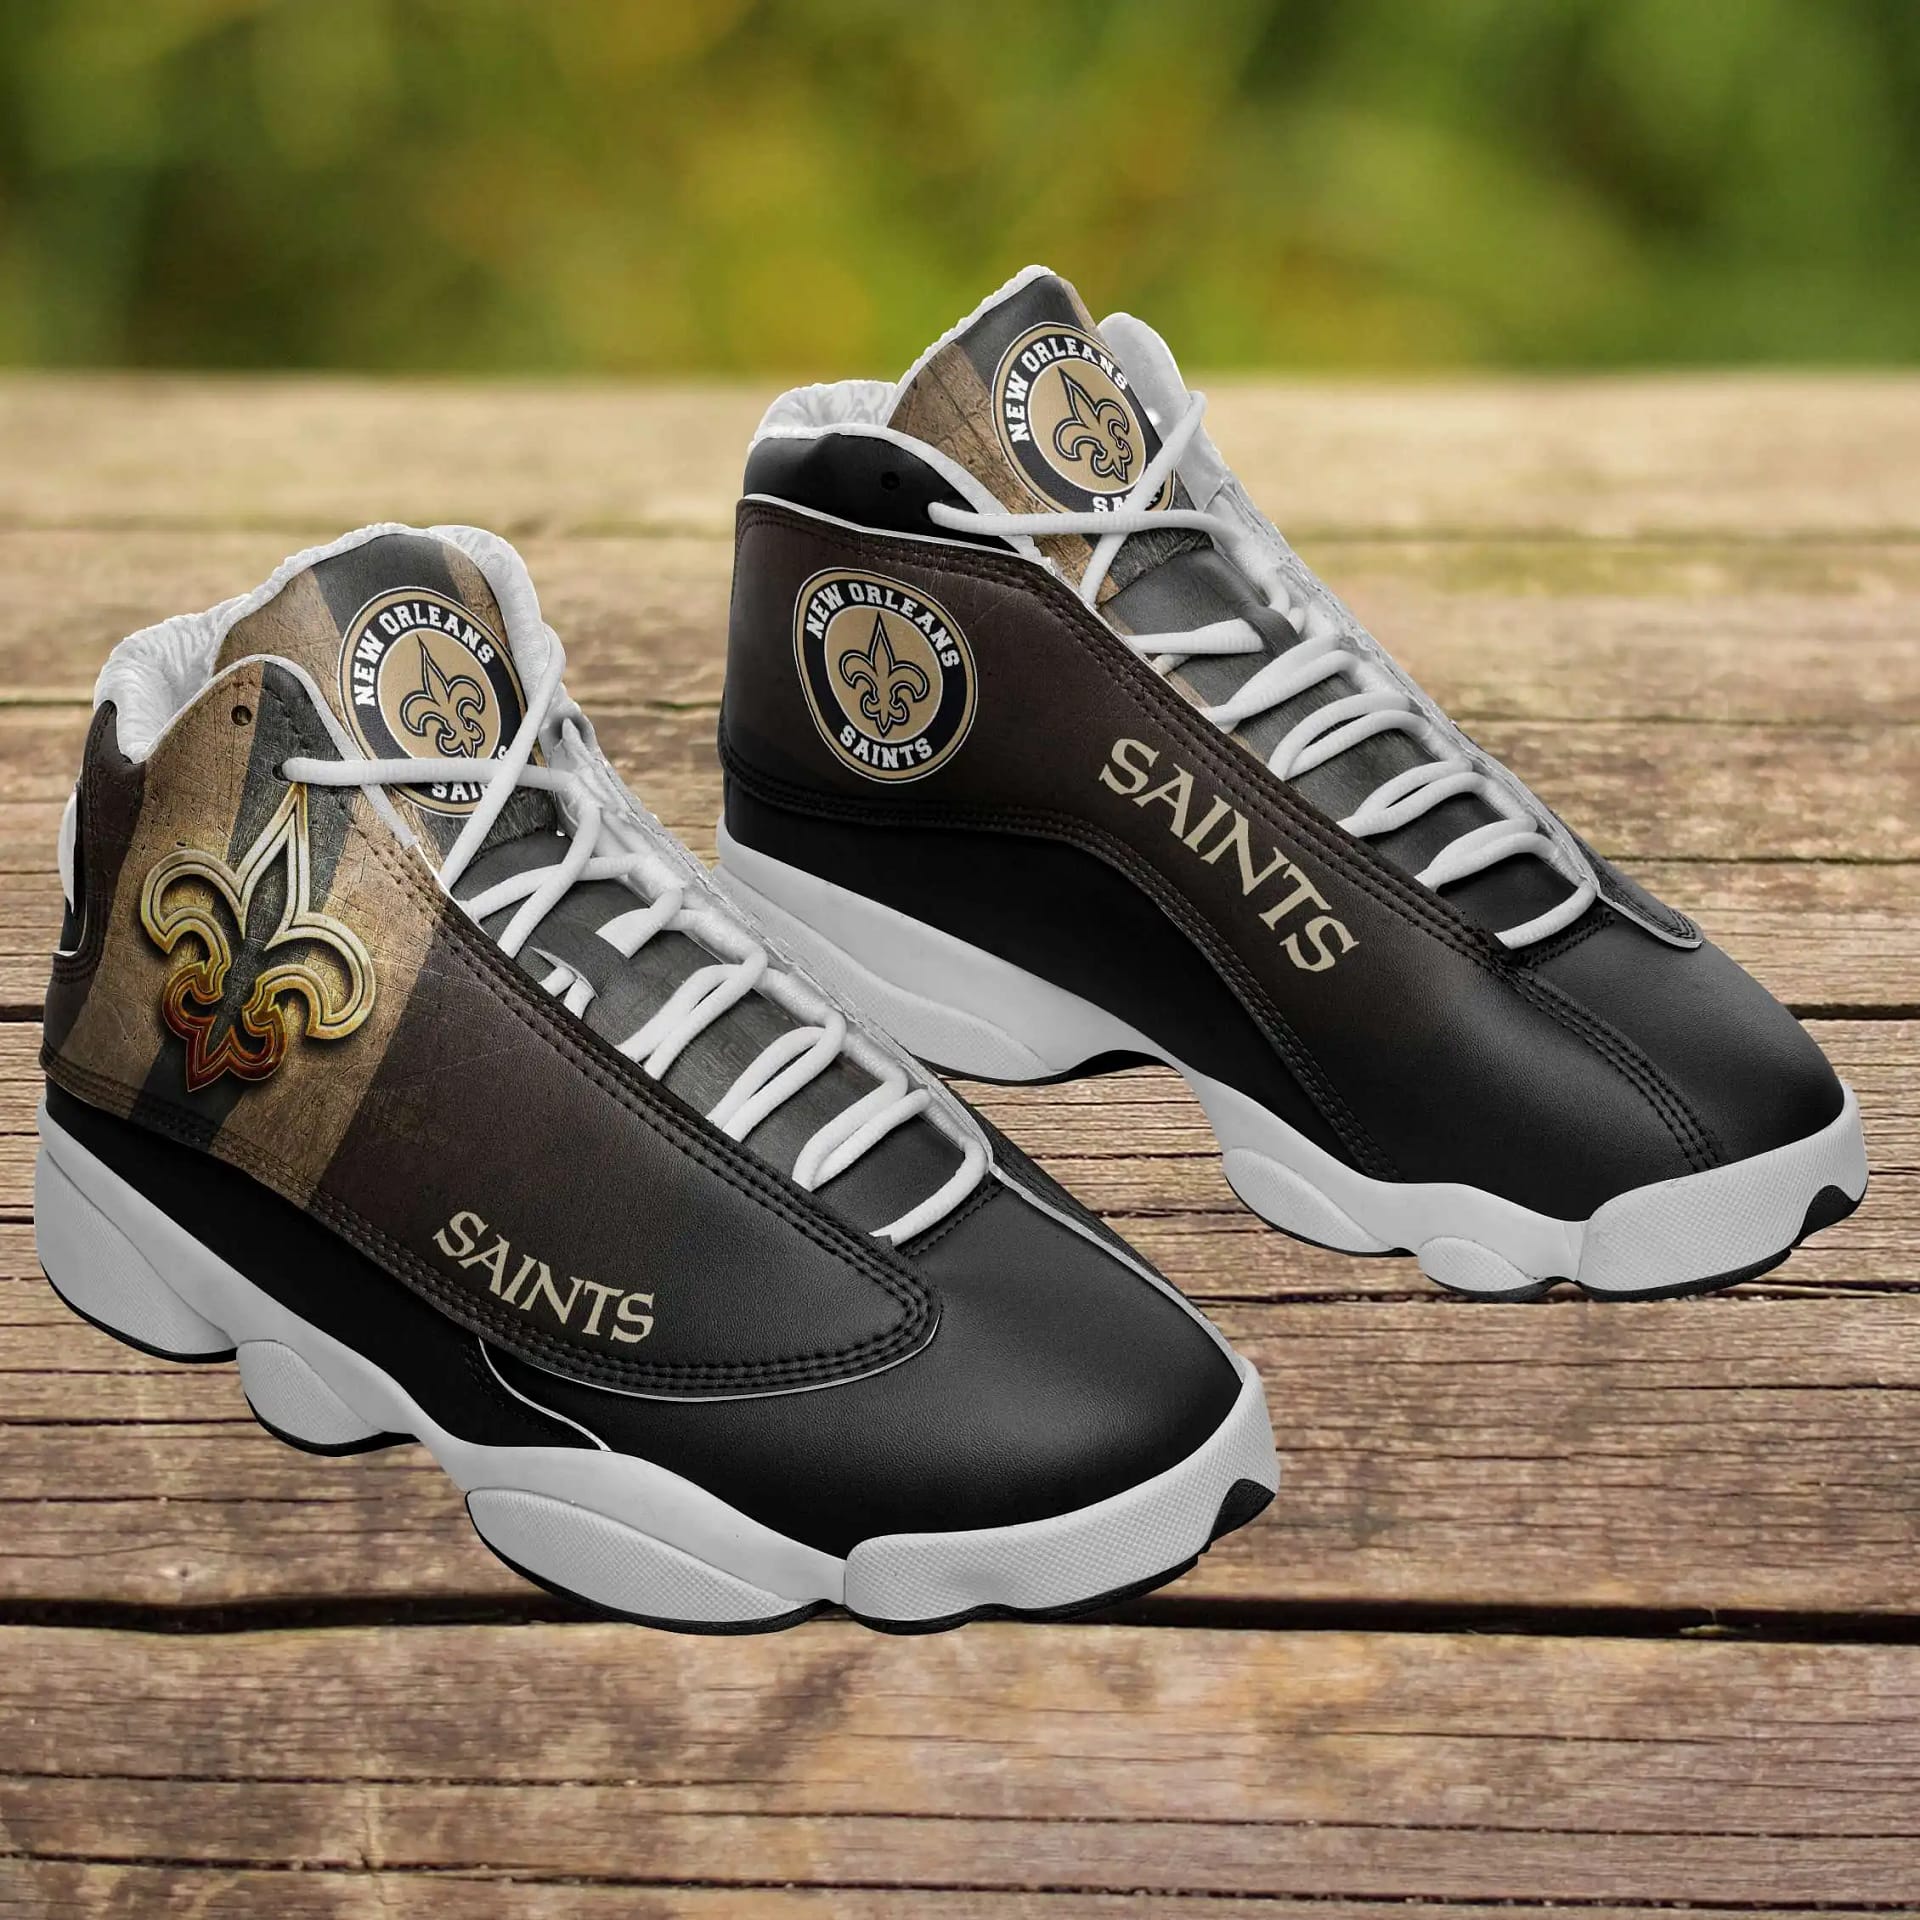 New Orleans Saints Air Jordan Shoes